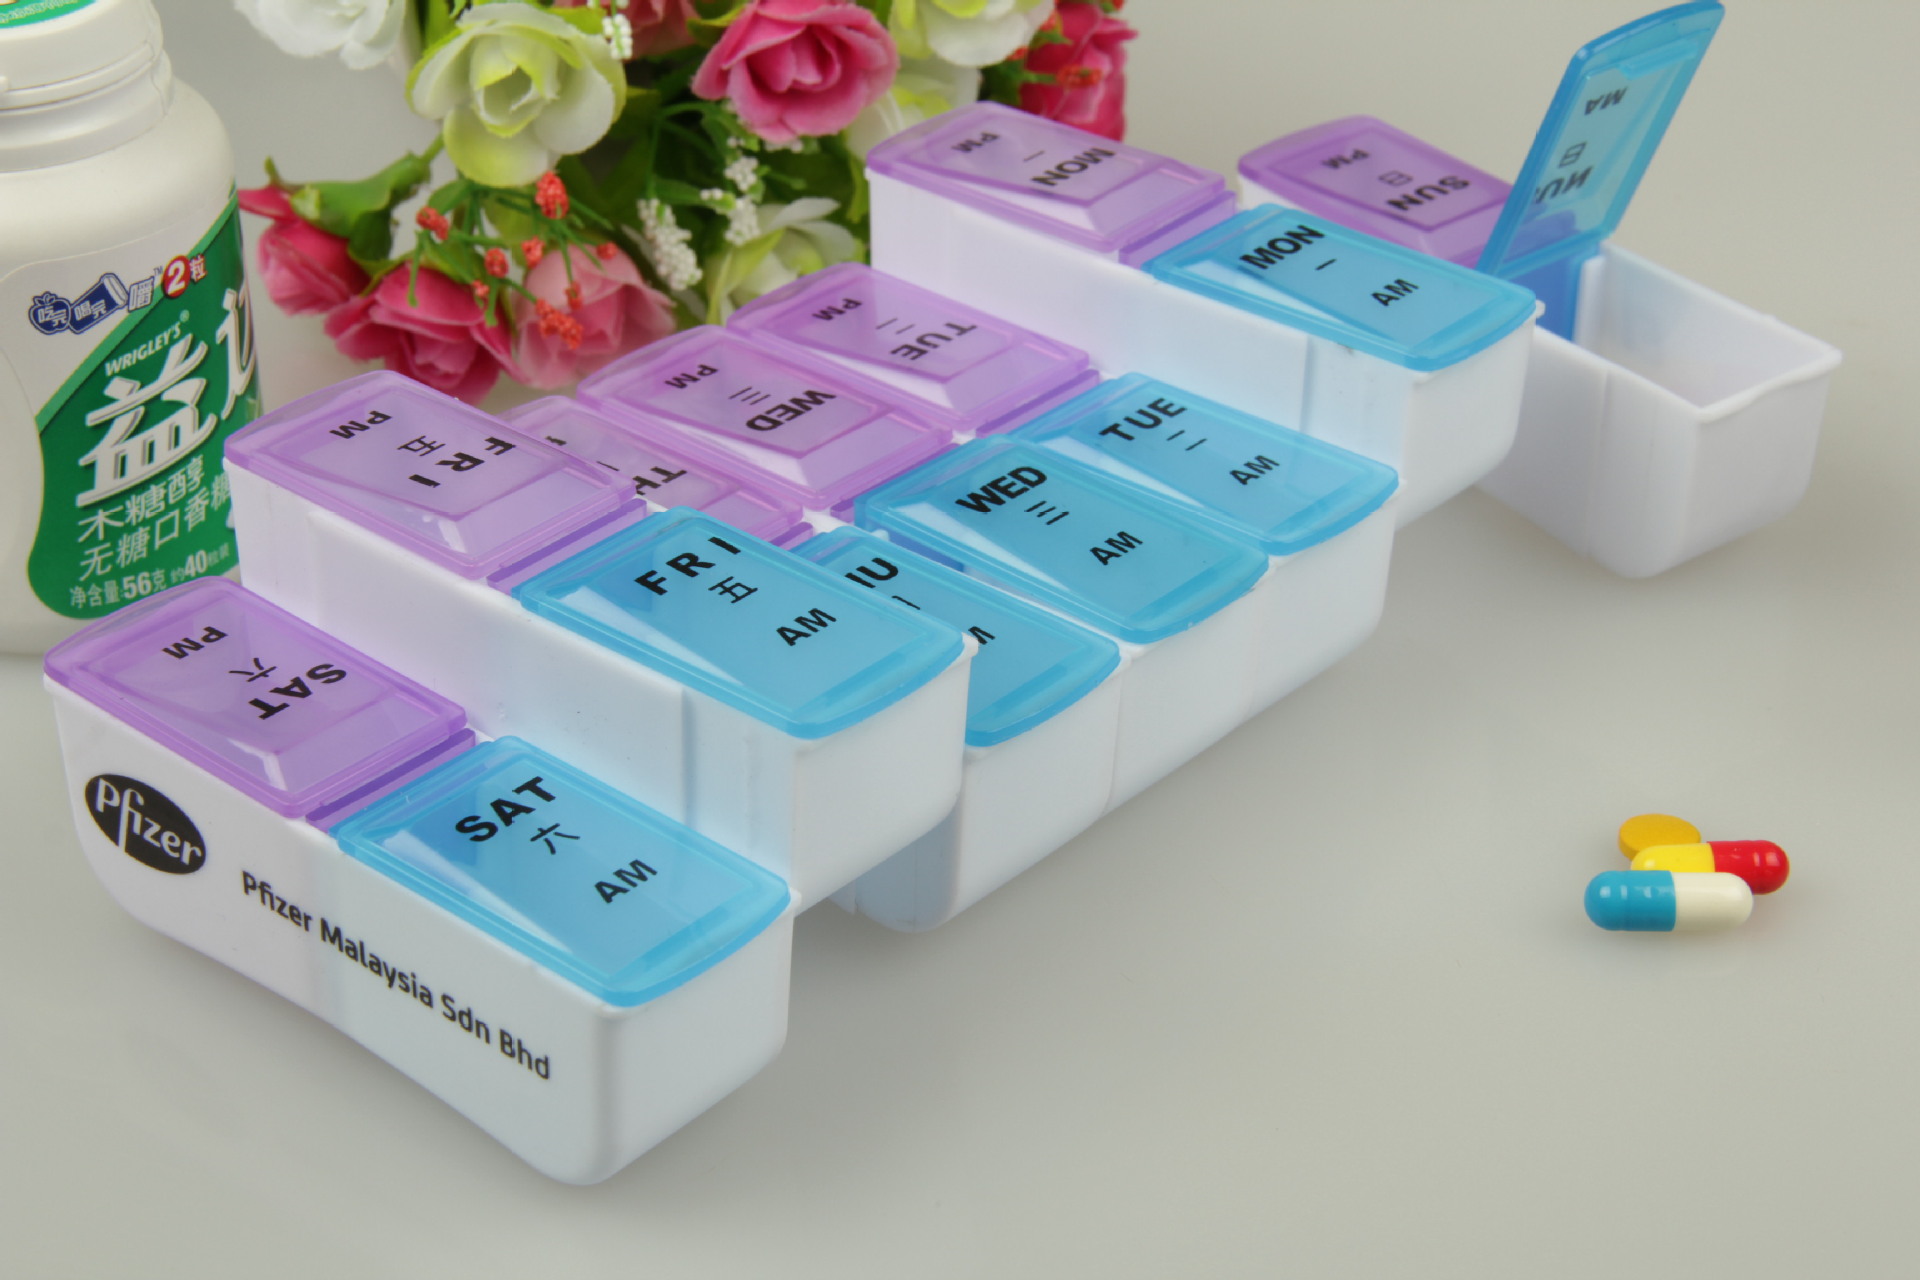 爱培MB100N智能药盒 - 产品介绍 - 上海镁善斯健康科技有限公司